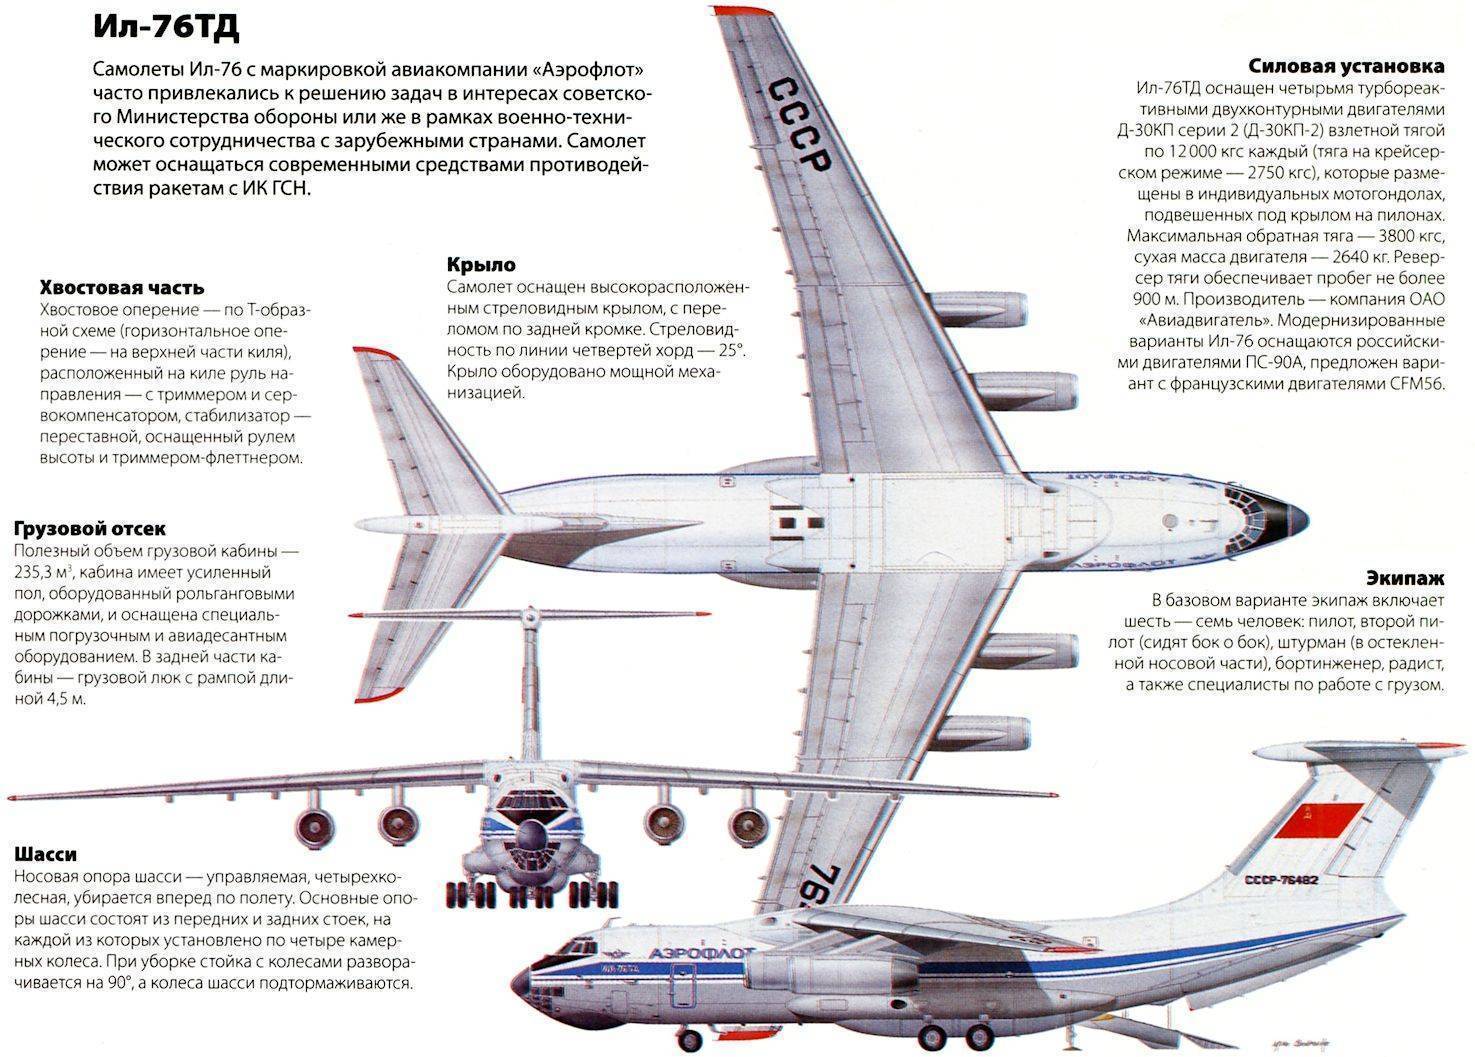 Ил-12: технические характеристики, история создания, модификации